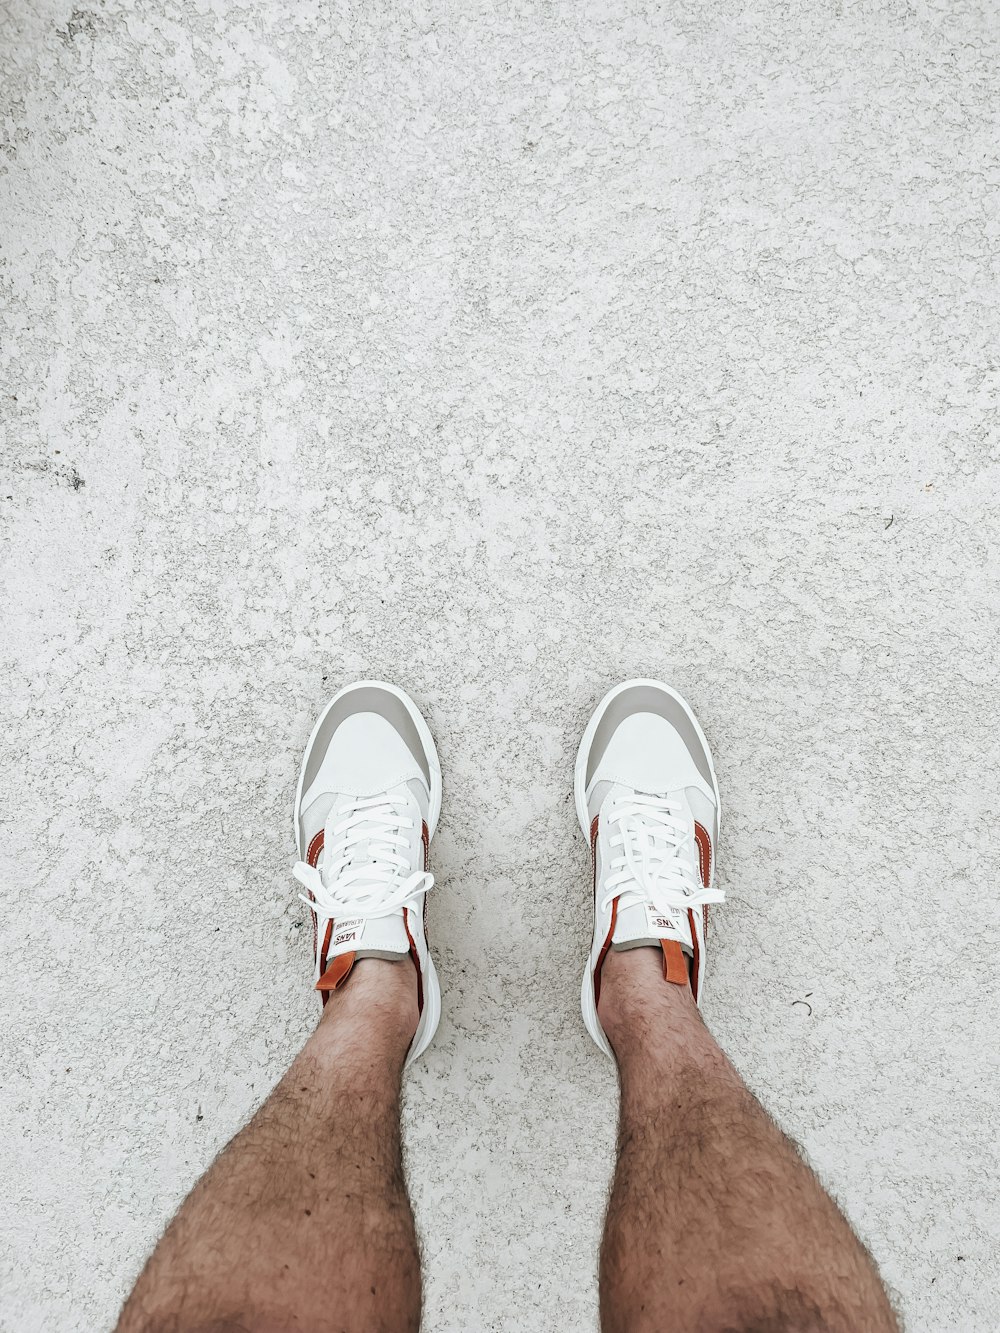 白い靴を履いた人の足